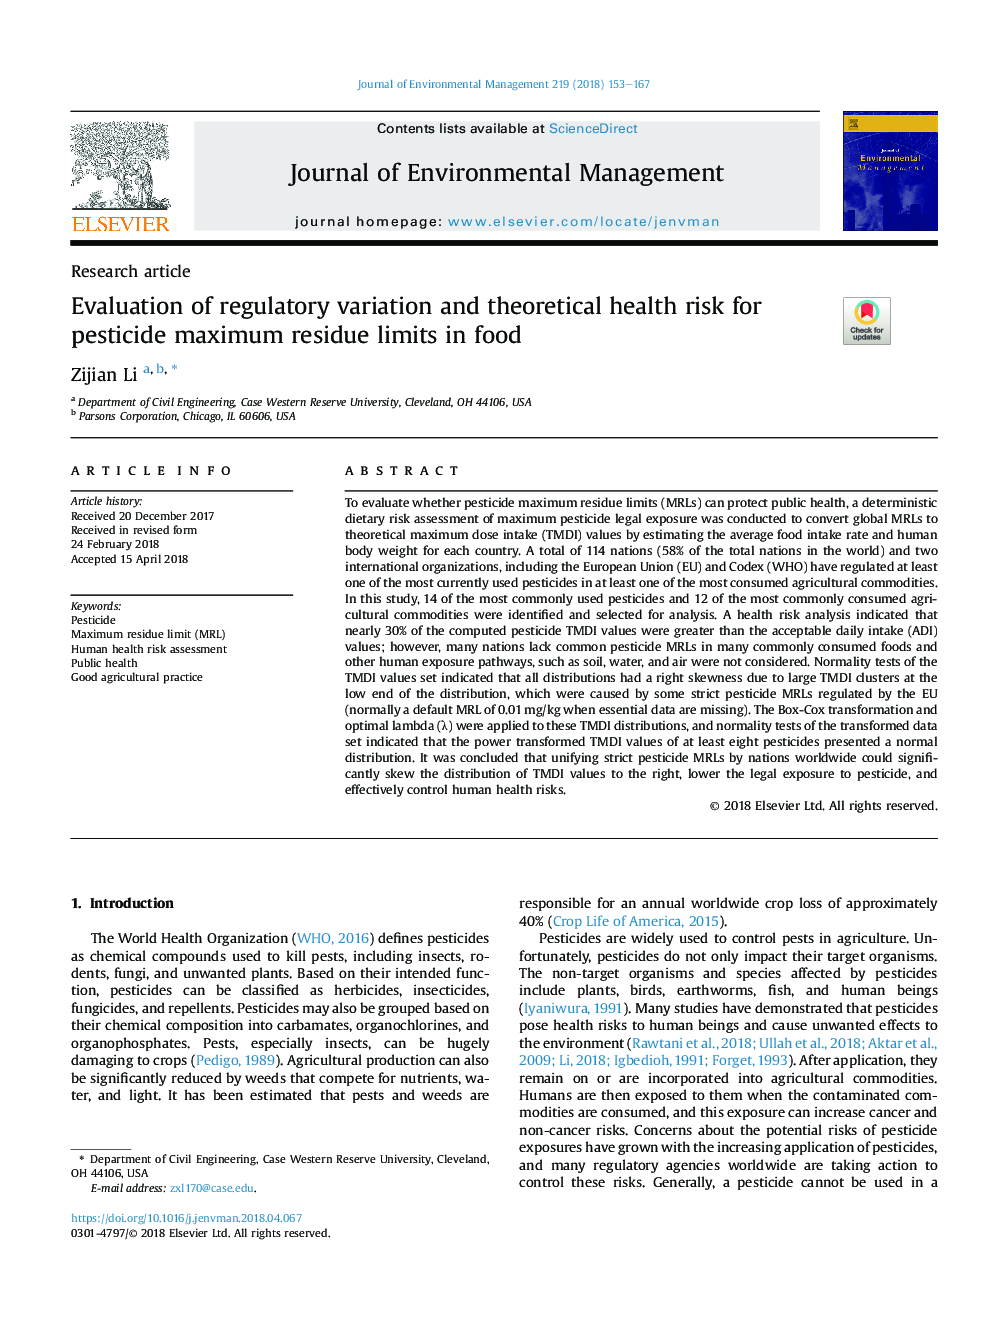 ارزیابی تغییرات نظارتی و خطر تئوری بهداشتی برای محدودیت حداکثر مانع از آفت کش ها در غذا 